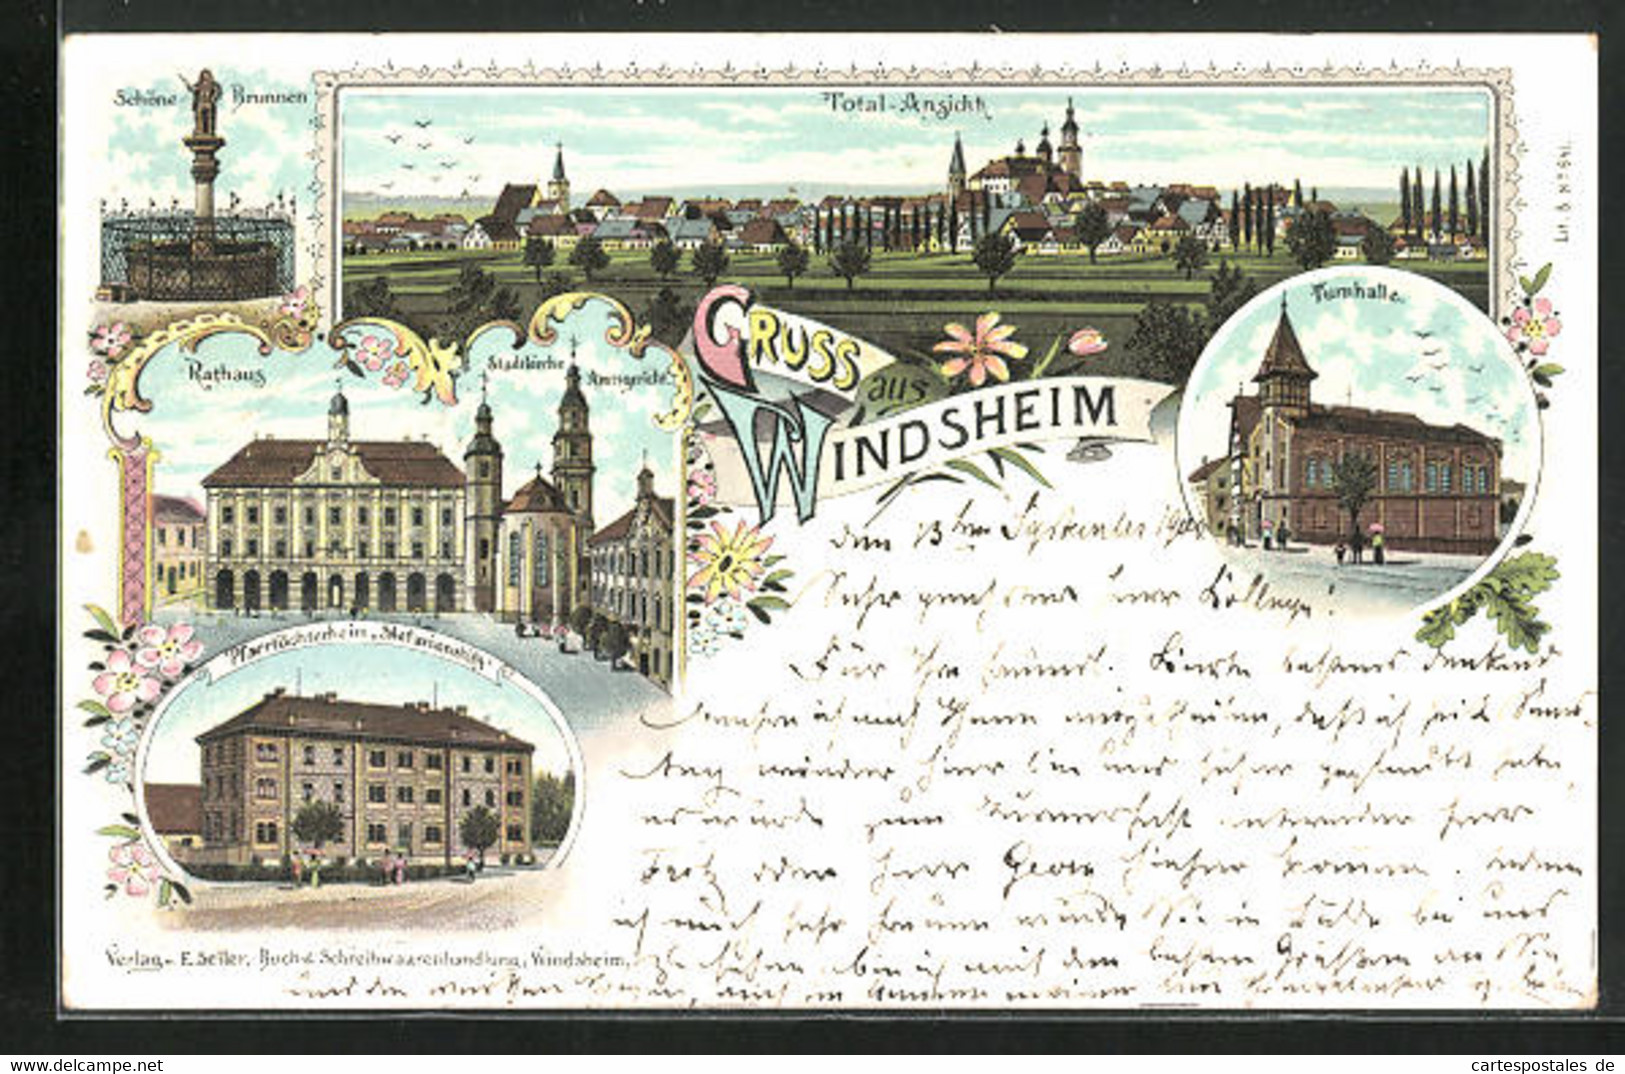 Lithographie Windsheim, Rathaus, Schöne-Brunnen, Pfarrtöchterheim Stefanienstift - Bad Windsheim